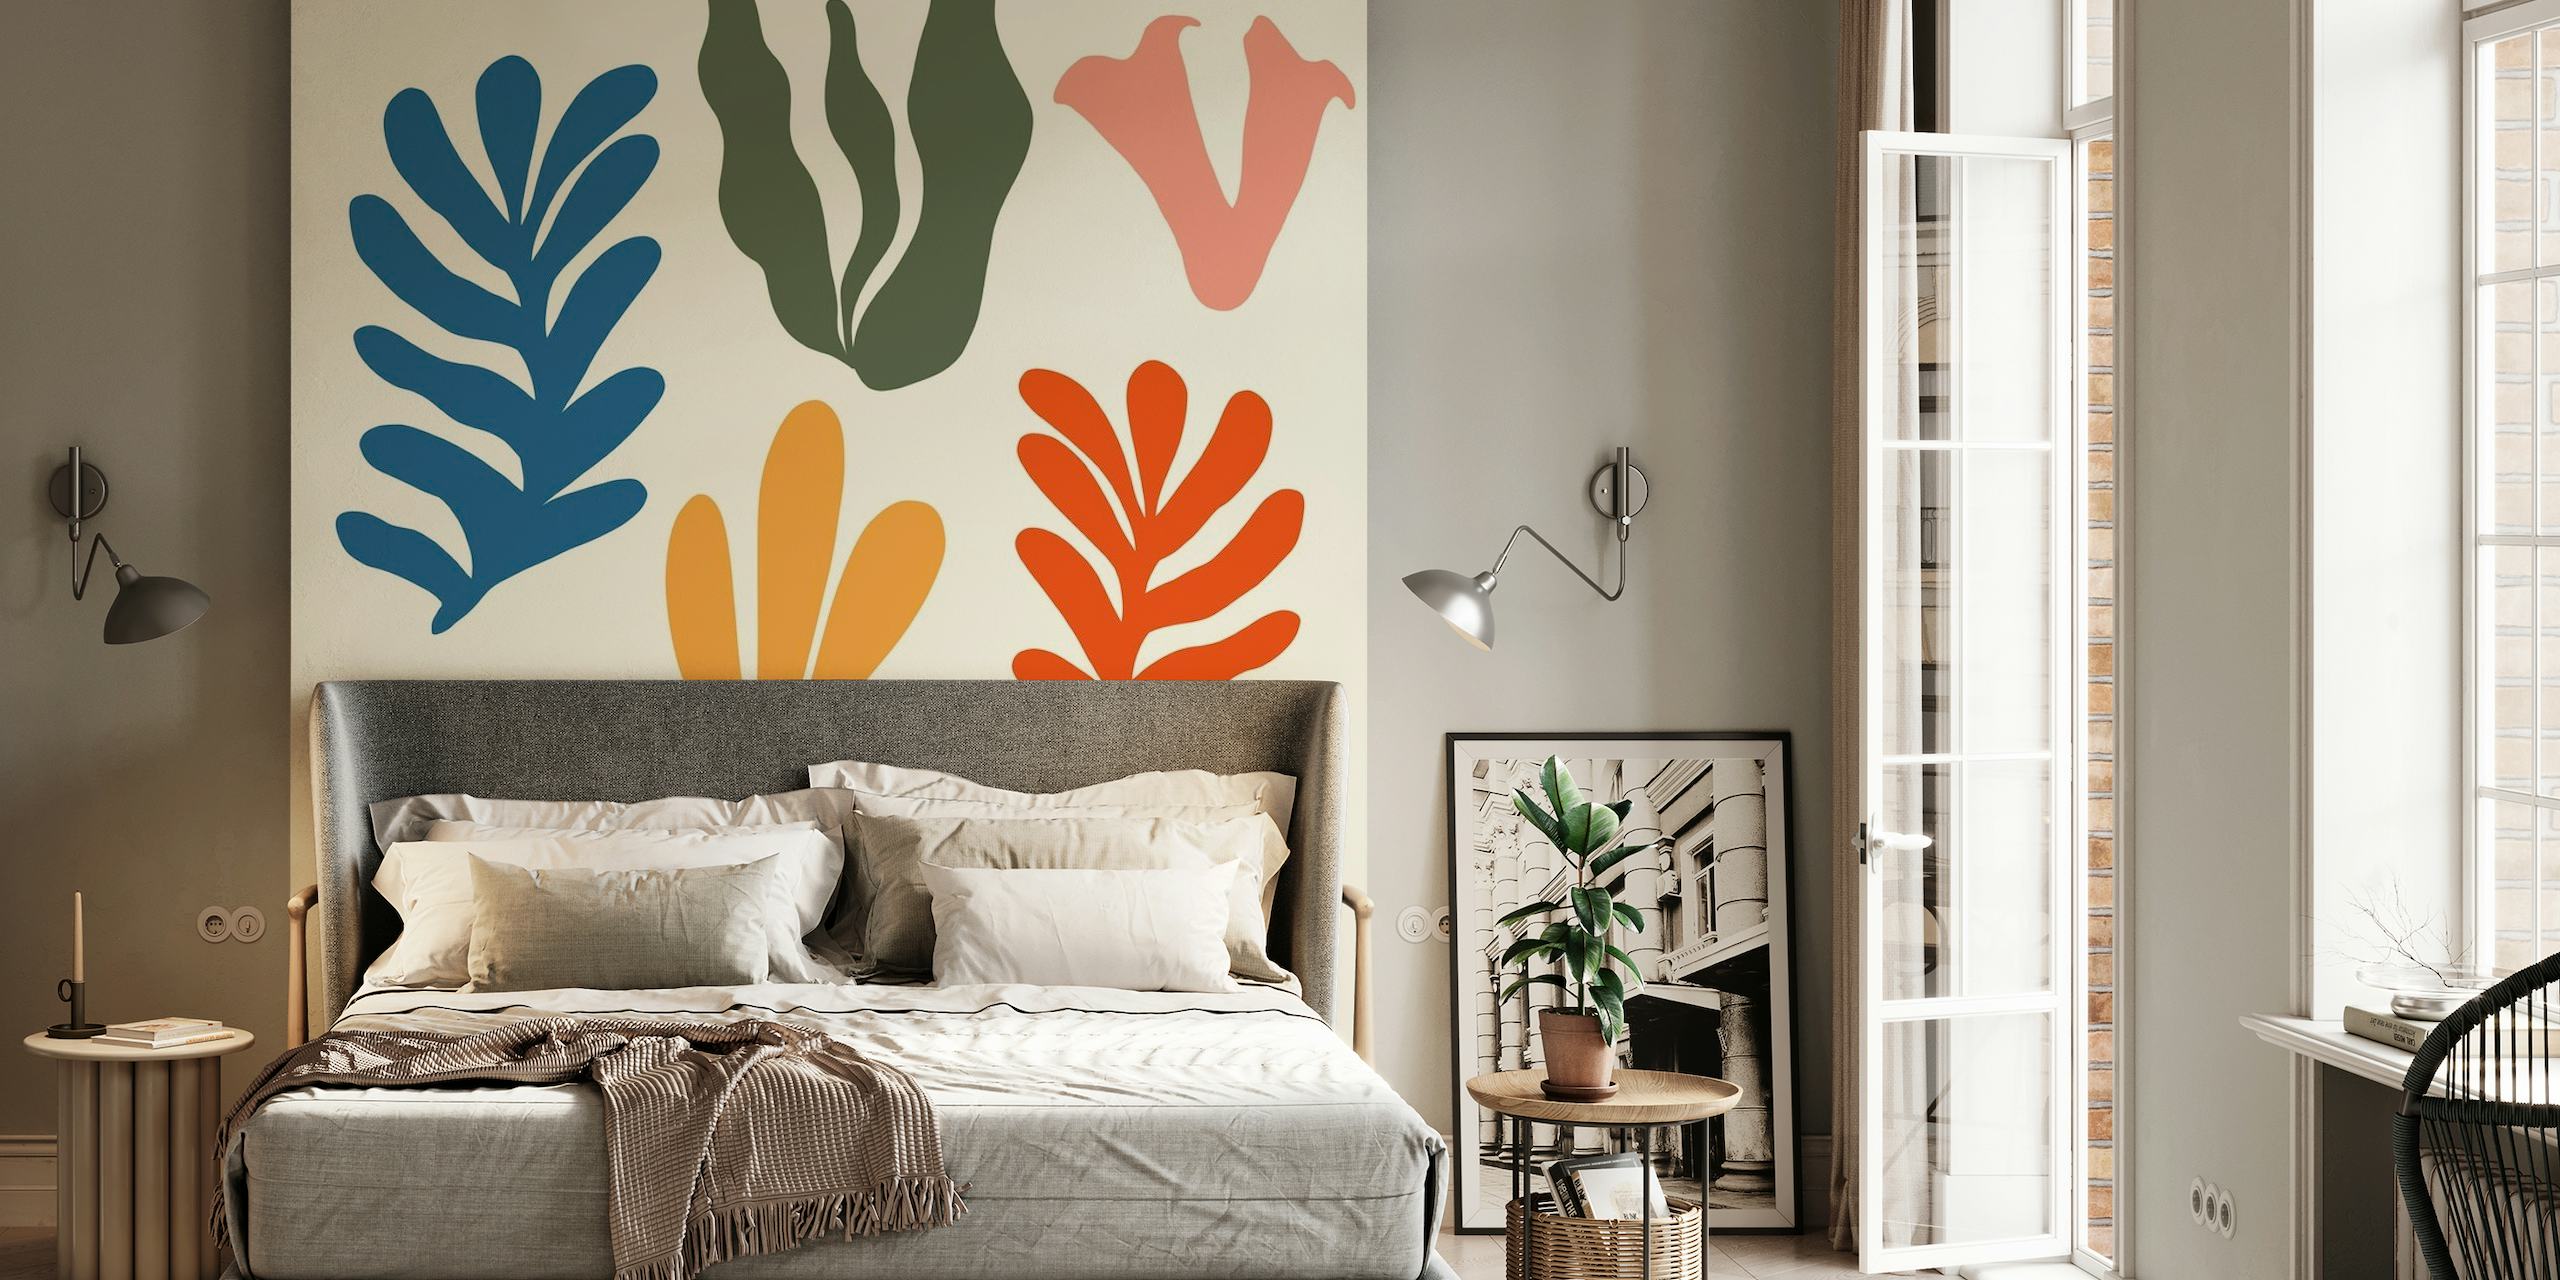 Papier peint mural abstrait stylisé en jonc de mer avec une variété de formes colorées sur fond neutre